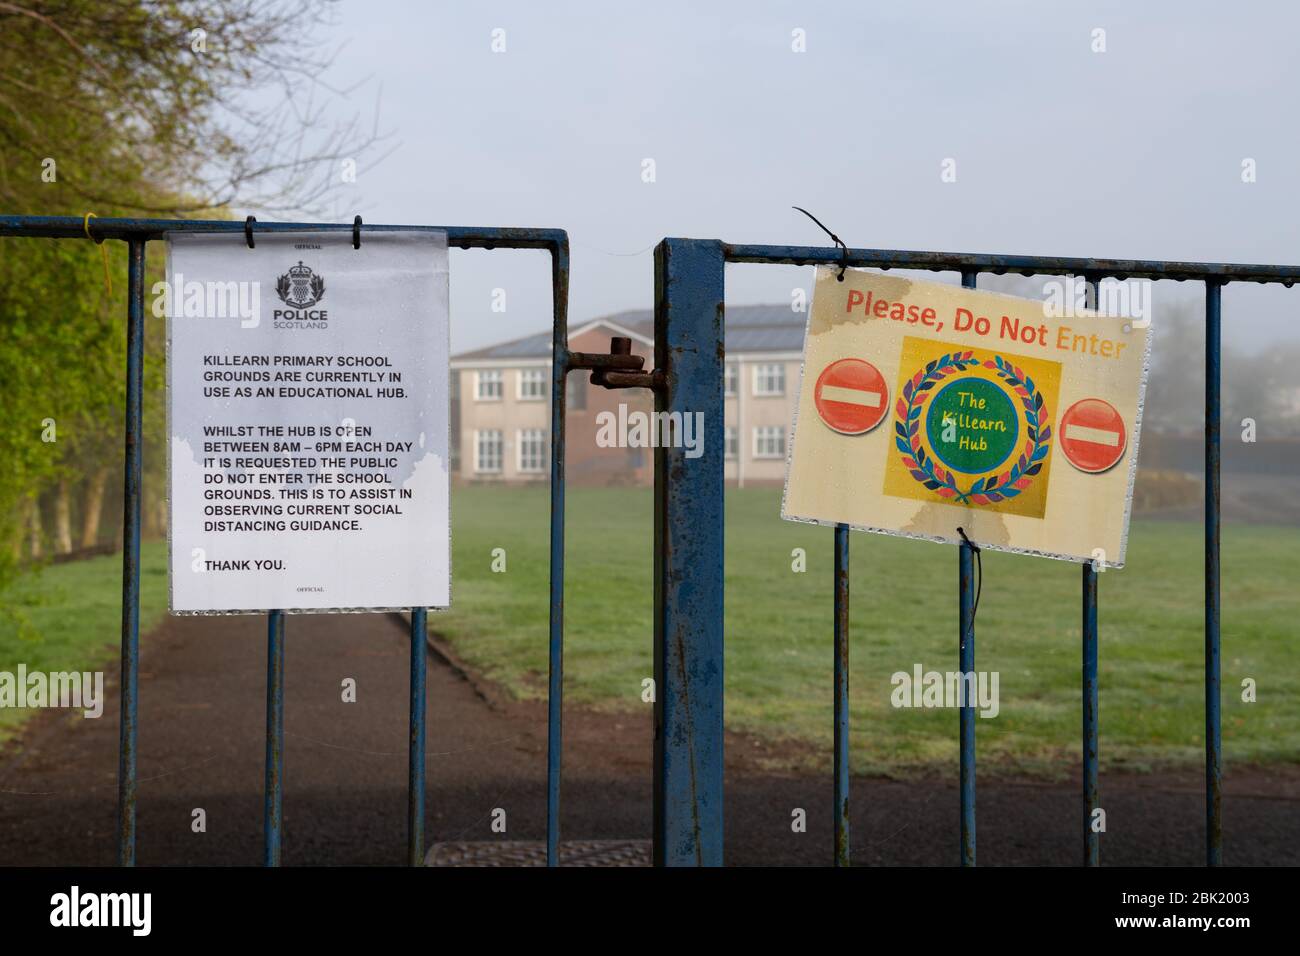 Killearn Primary School - eine von mehreren Drehkreuz-Schulen im Stirling-Gebiet, die während der Coronavirus-Pandemie in Killearn, Stirlingshire, Schottland, betrieben werden Stockfoto